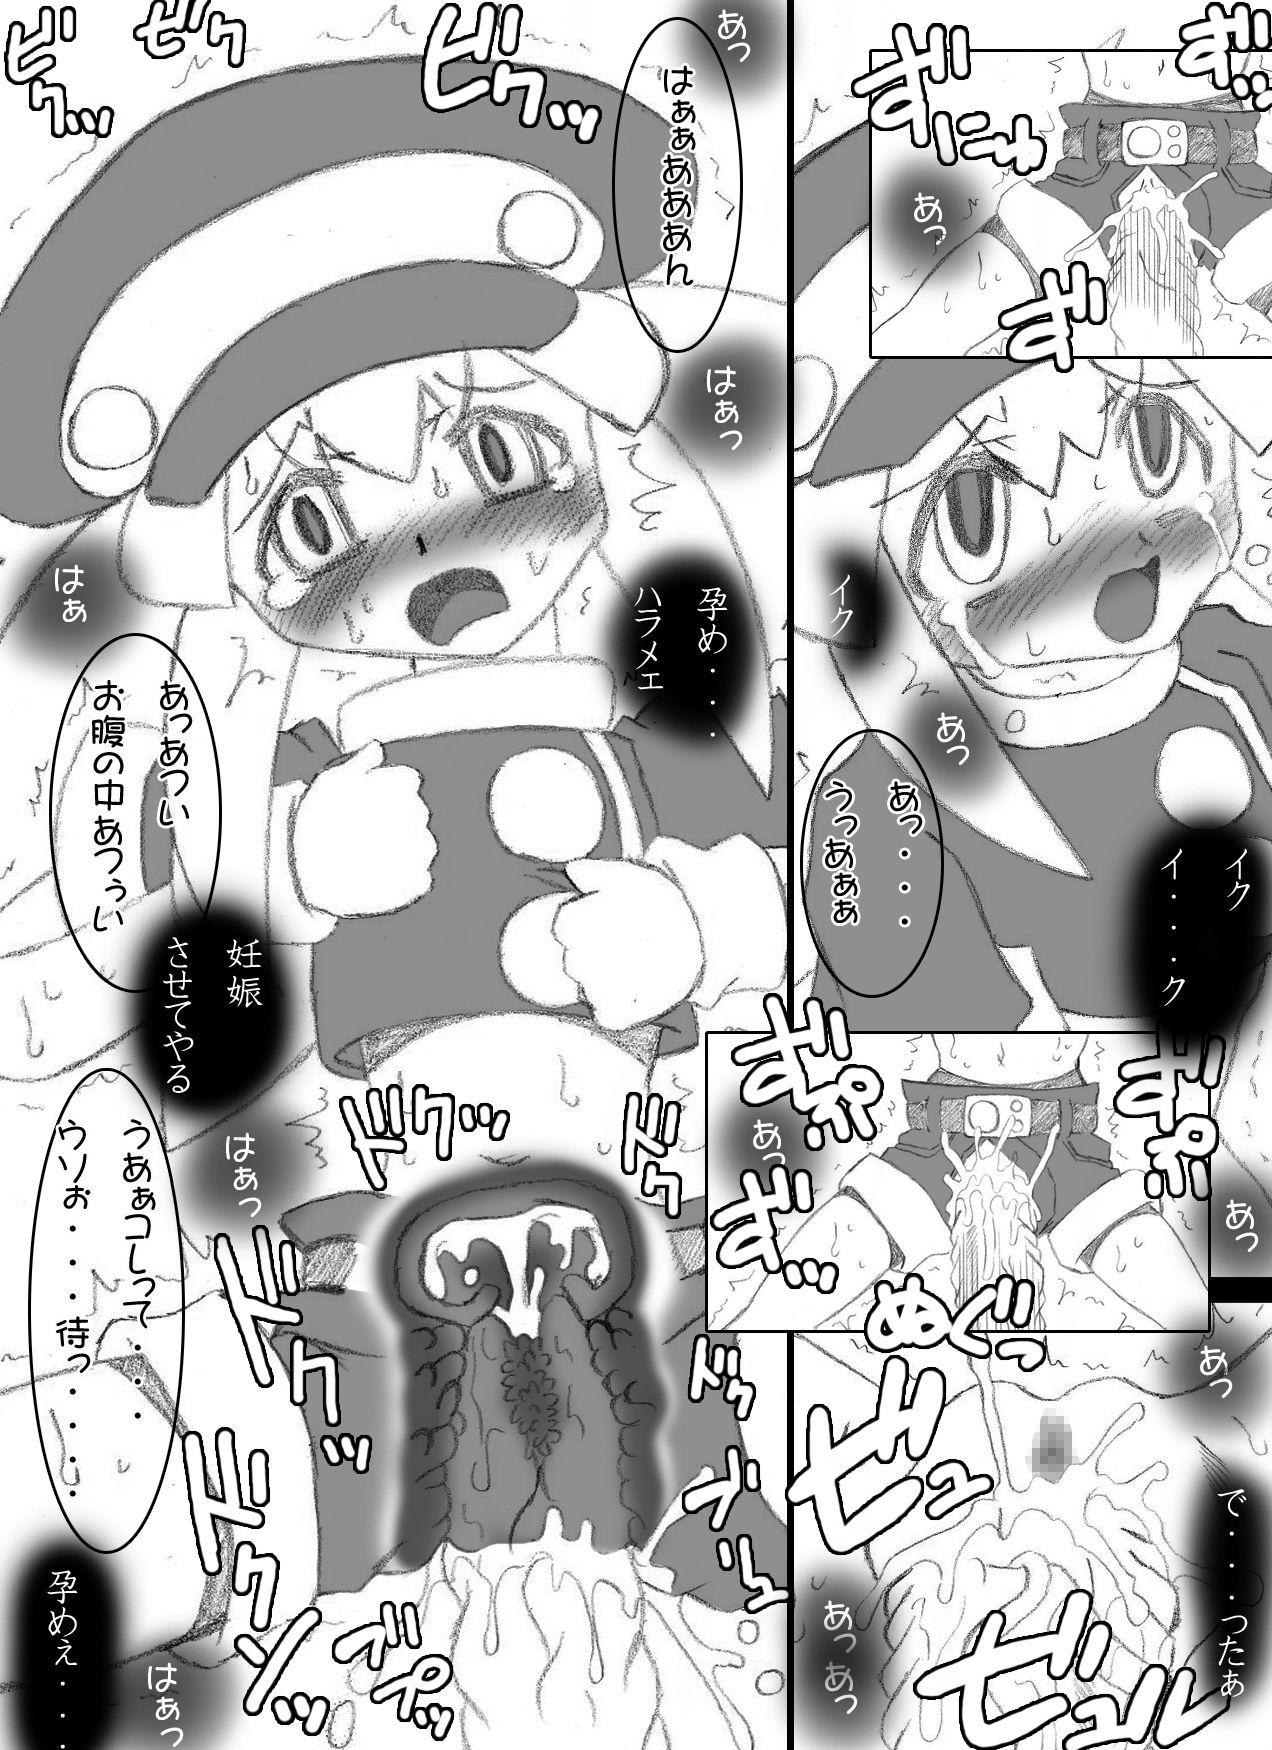 Doctor Atataka na Chitsu no Naka no Soushitsu - Mega man legends Job - Page 6